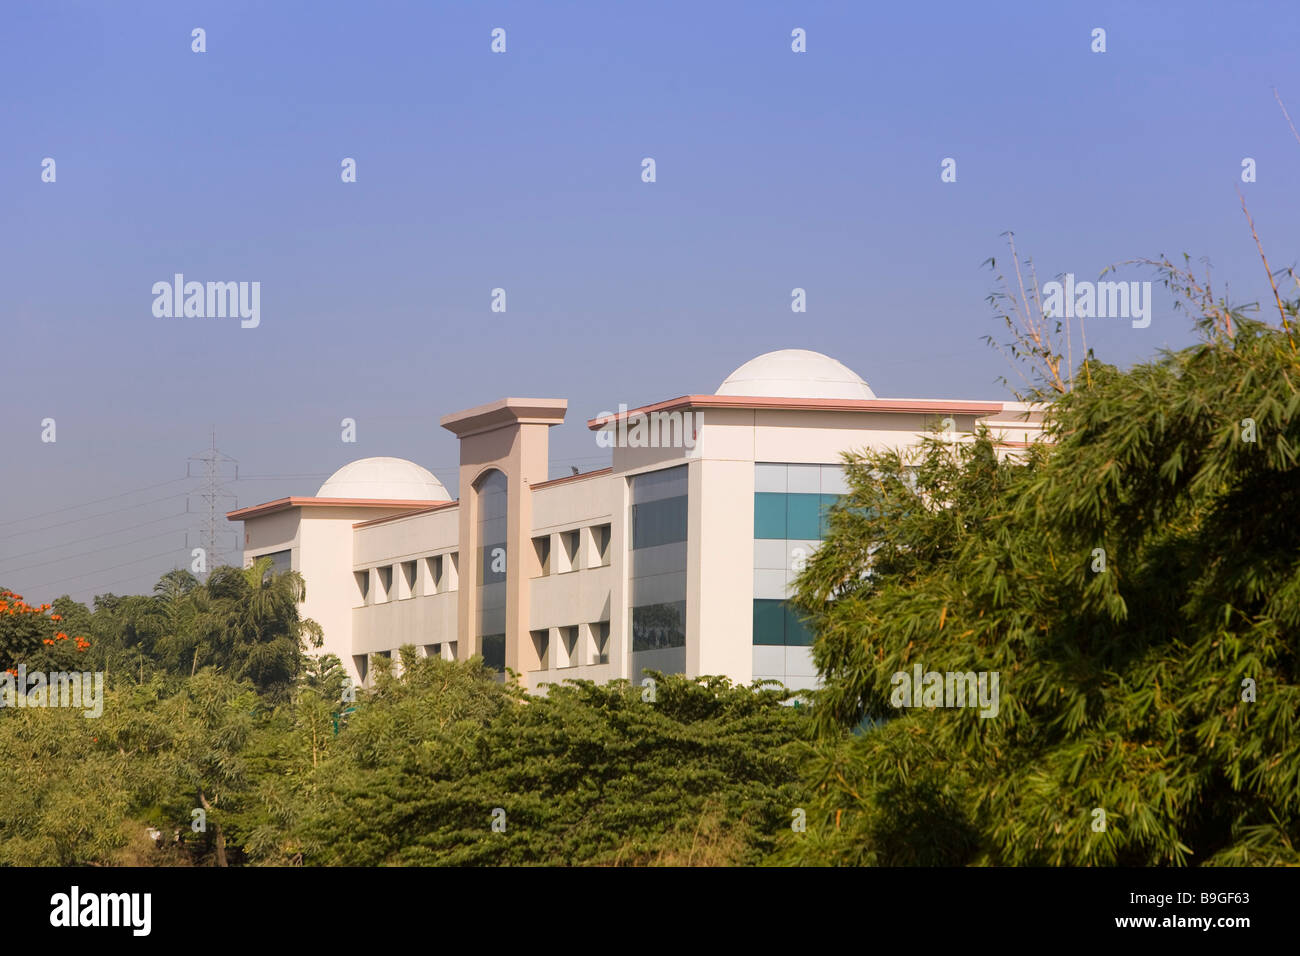 India Hyderabad Hi Tech city Stock Photo